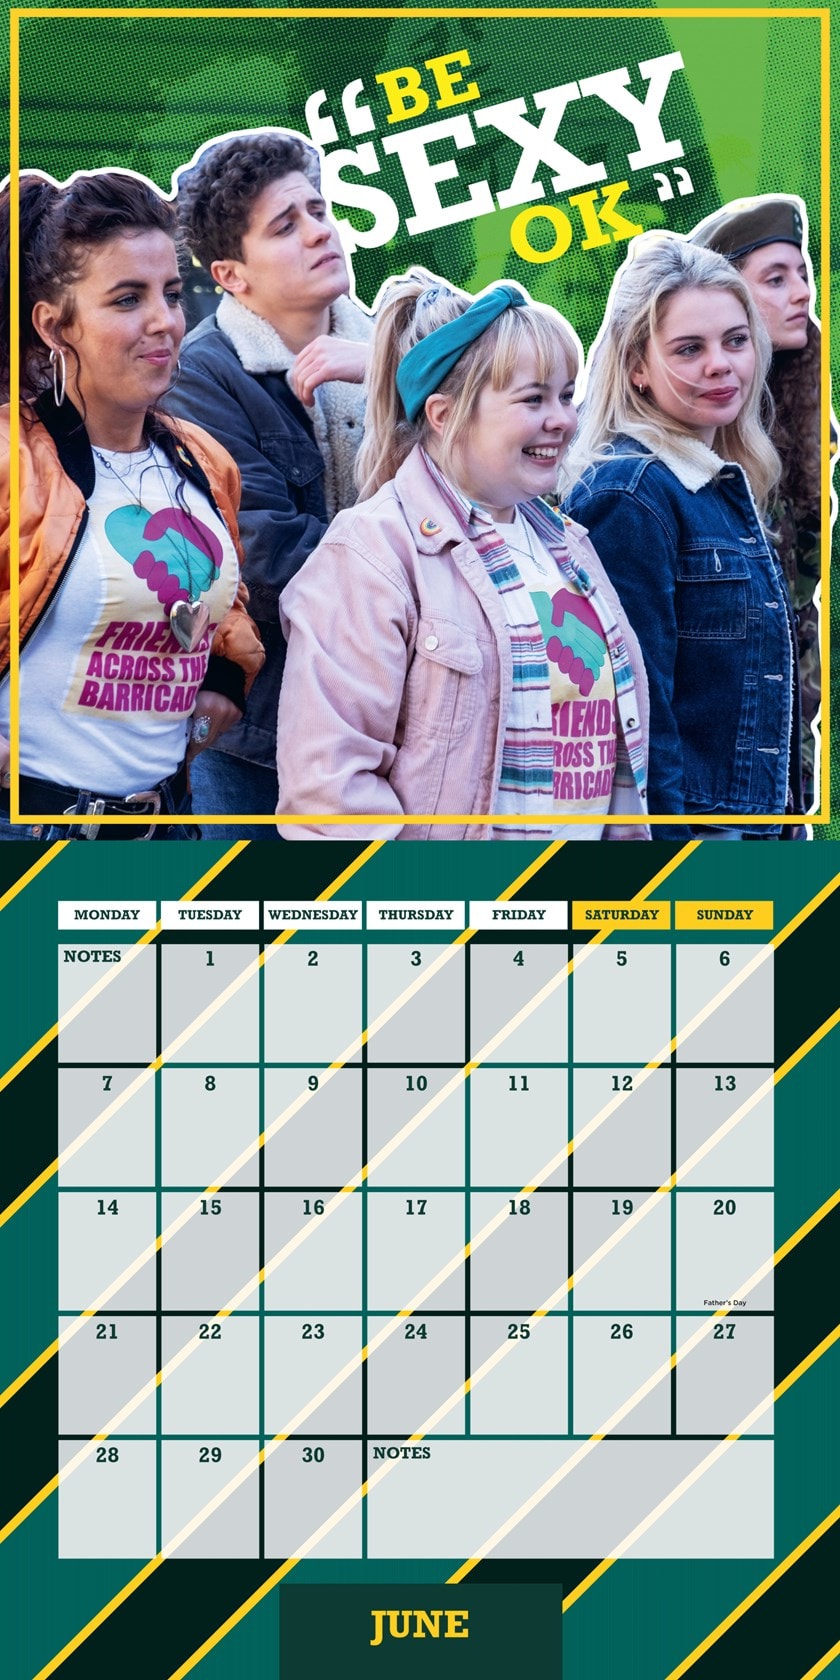 derry township school district calendar